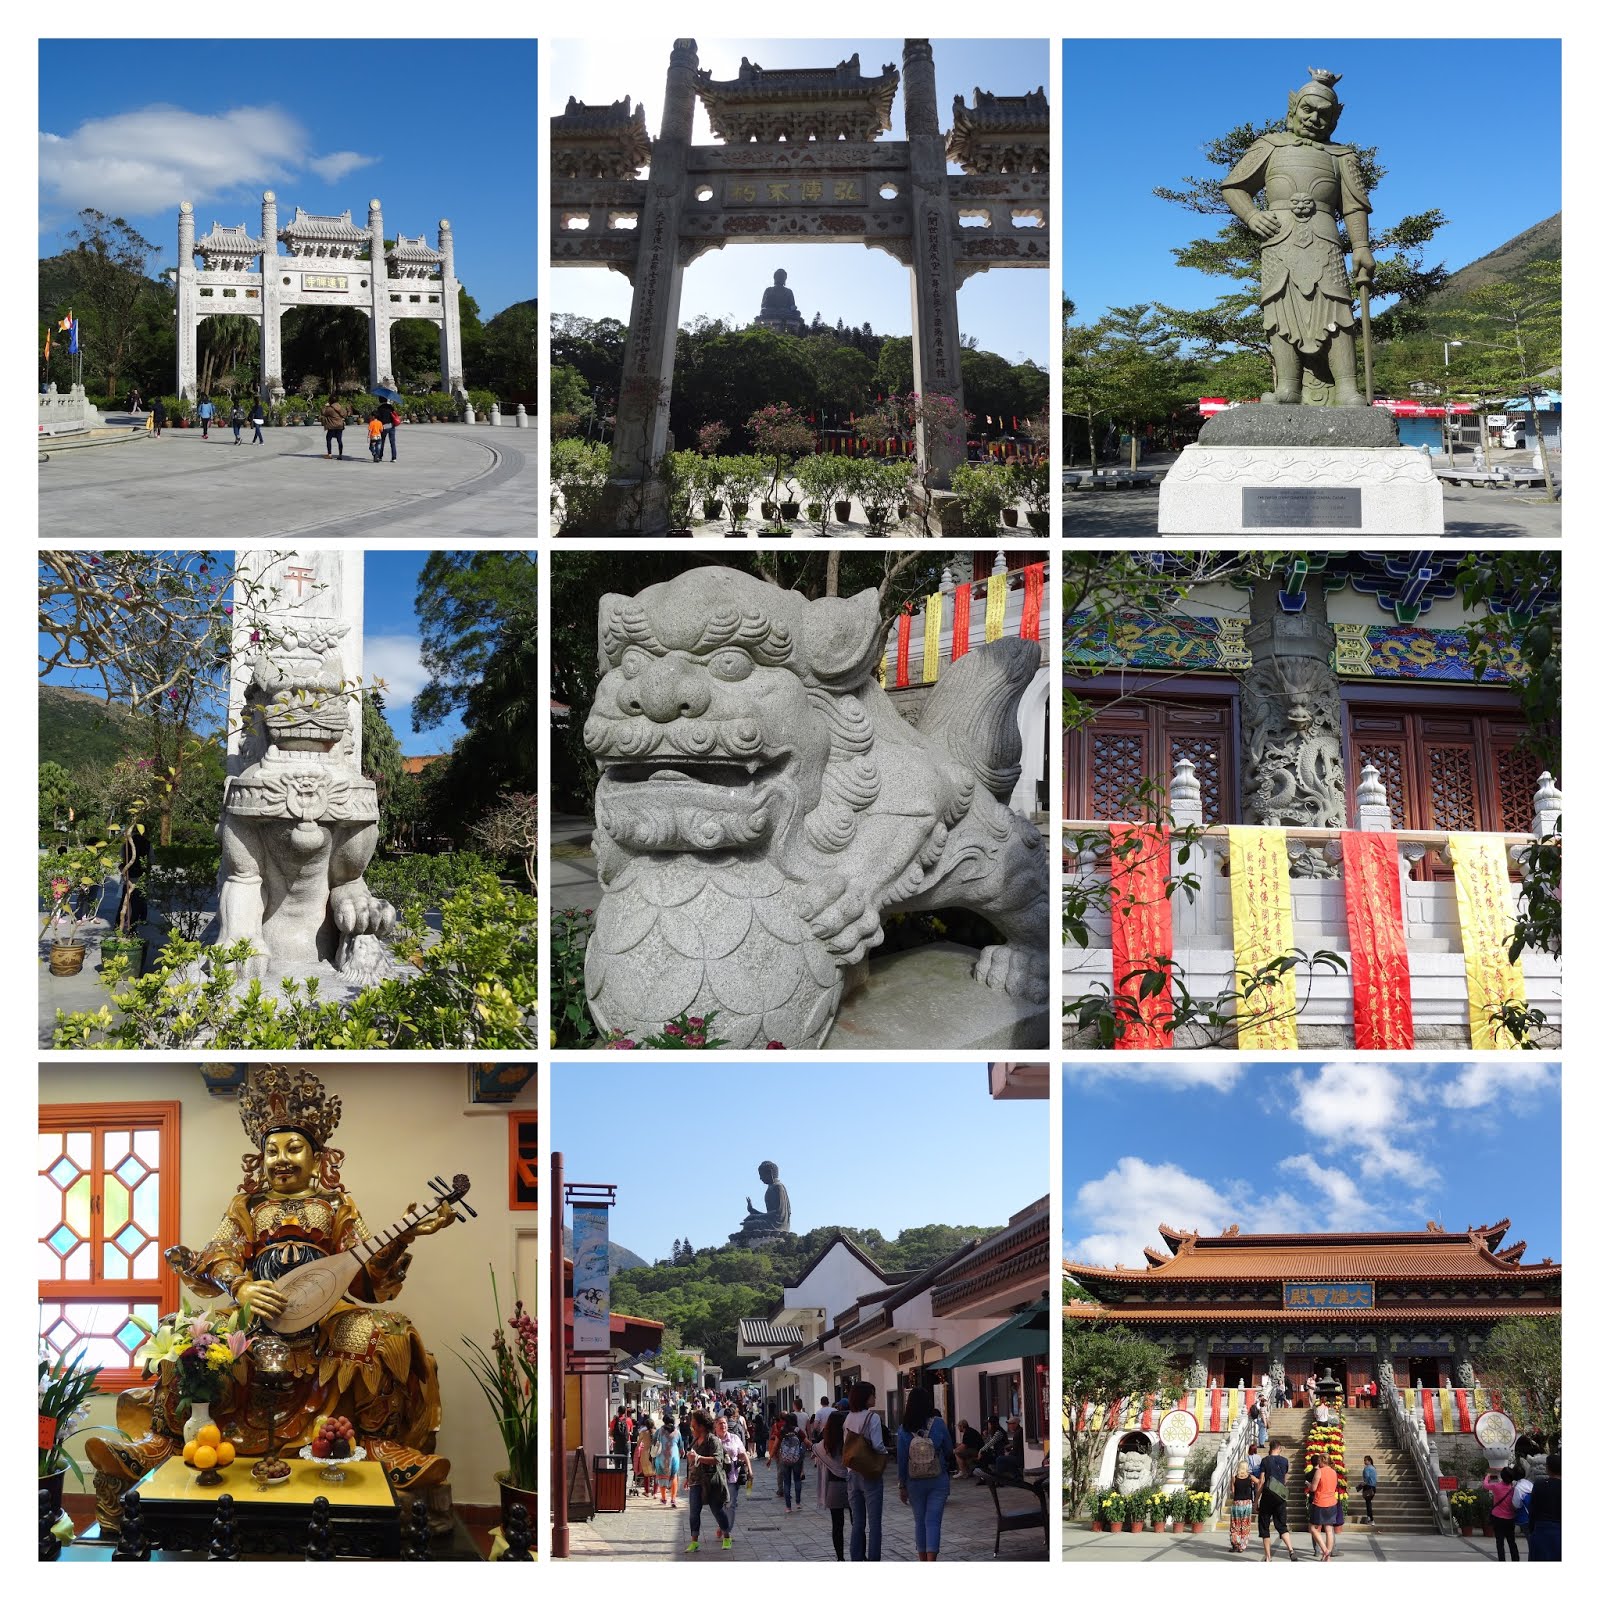 Big Buddha and Po Lin Monastery